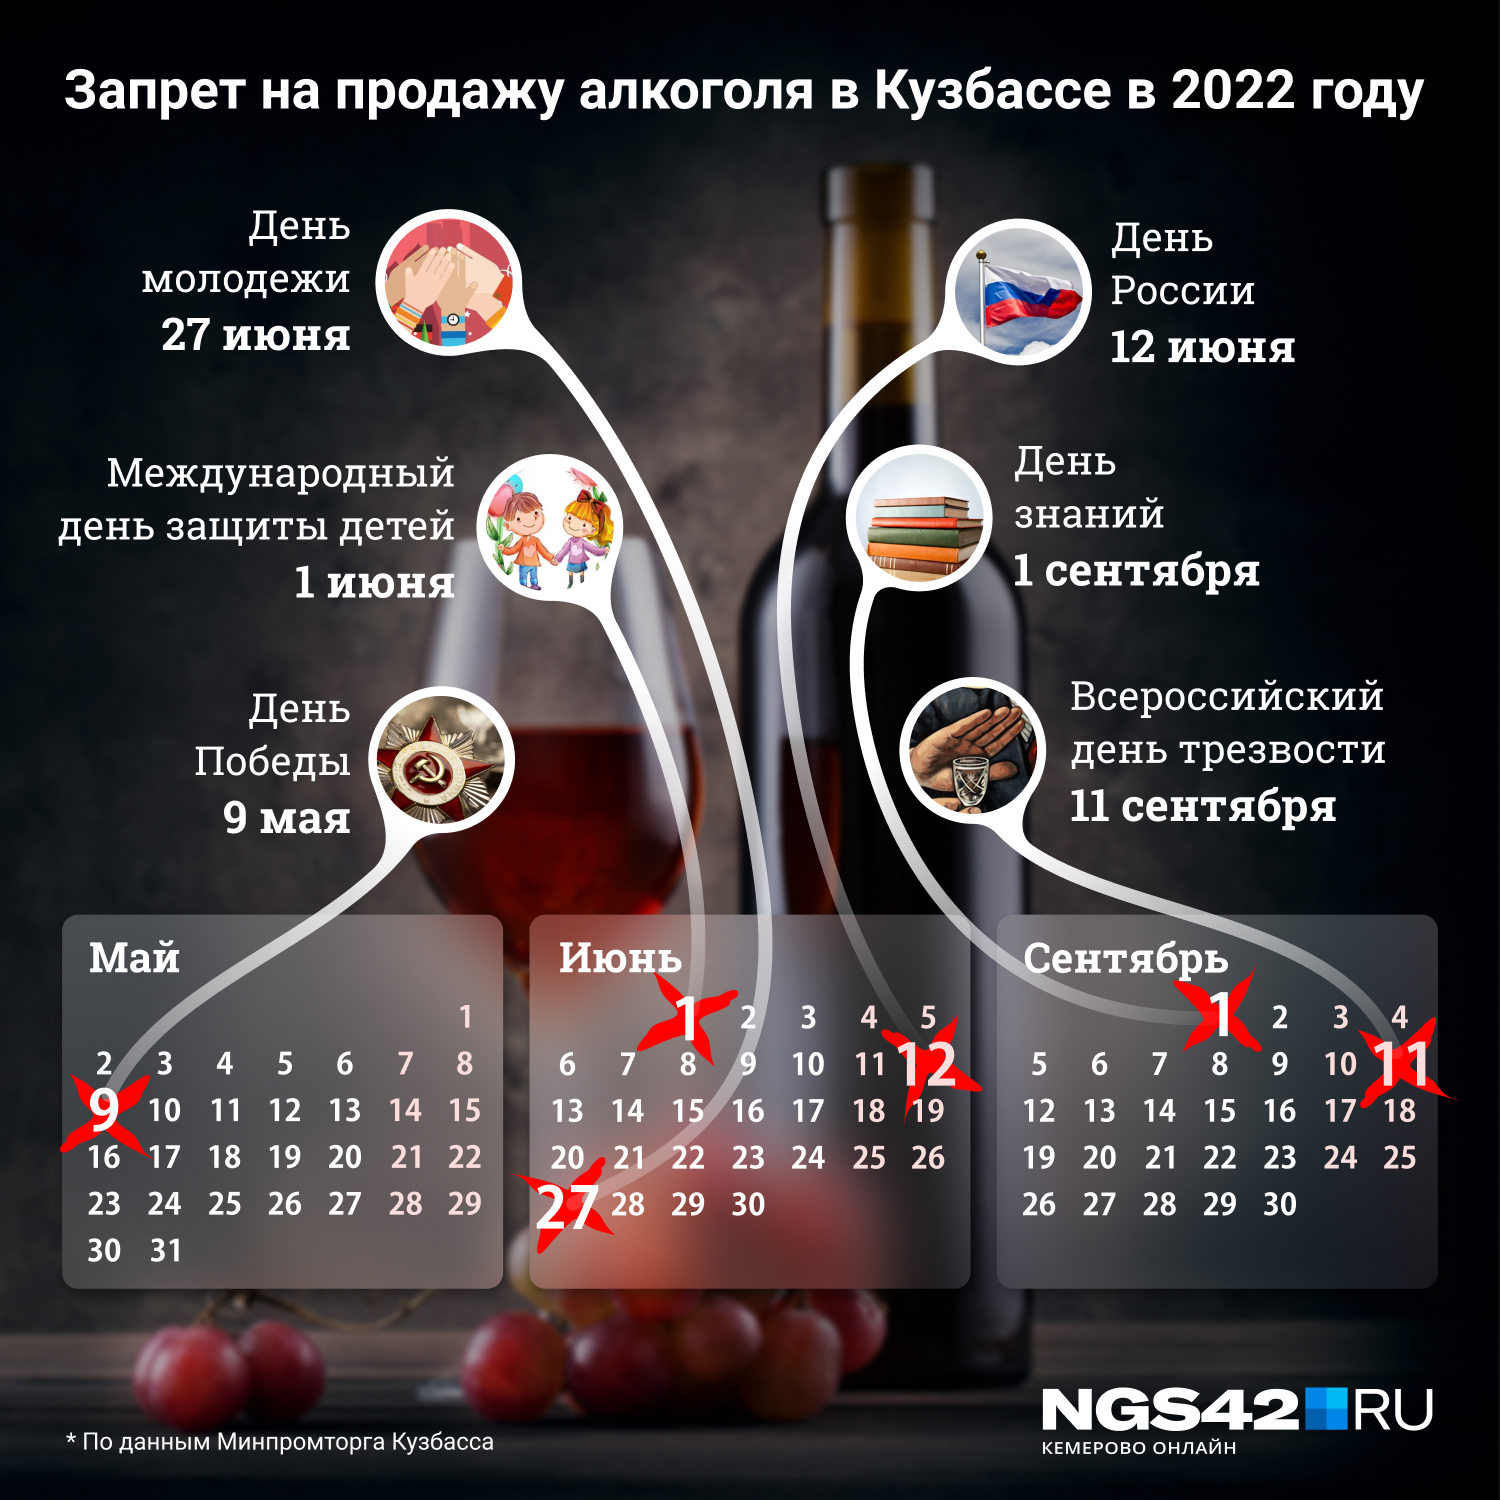 Даты, когда в Кузбассе запрещена продажа алкоголя <nobr>в 2022 году</nobr>